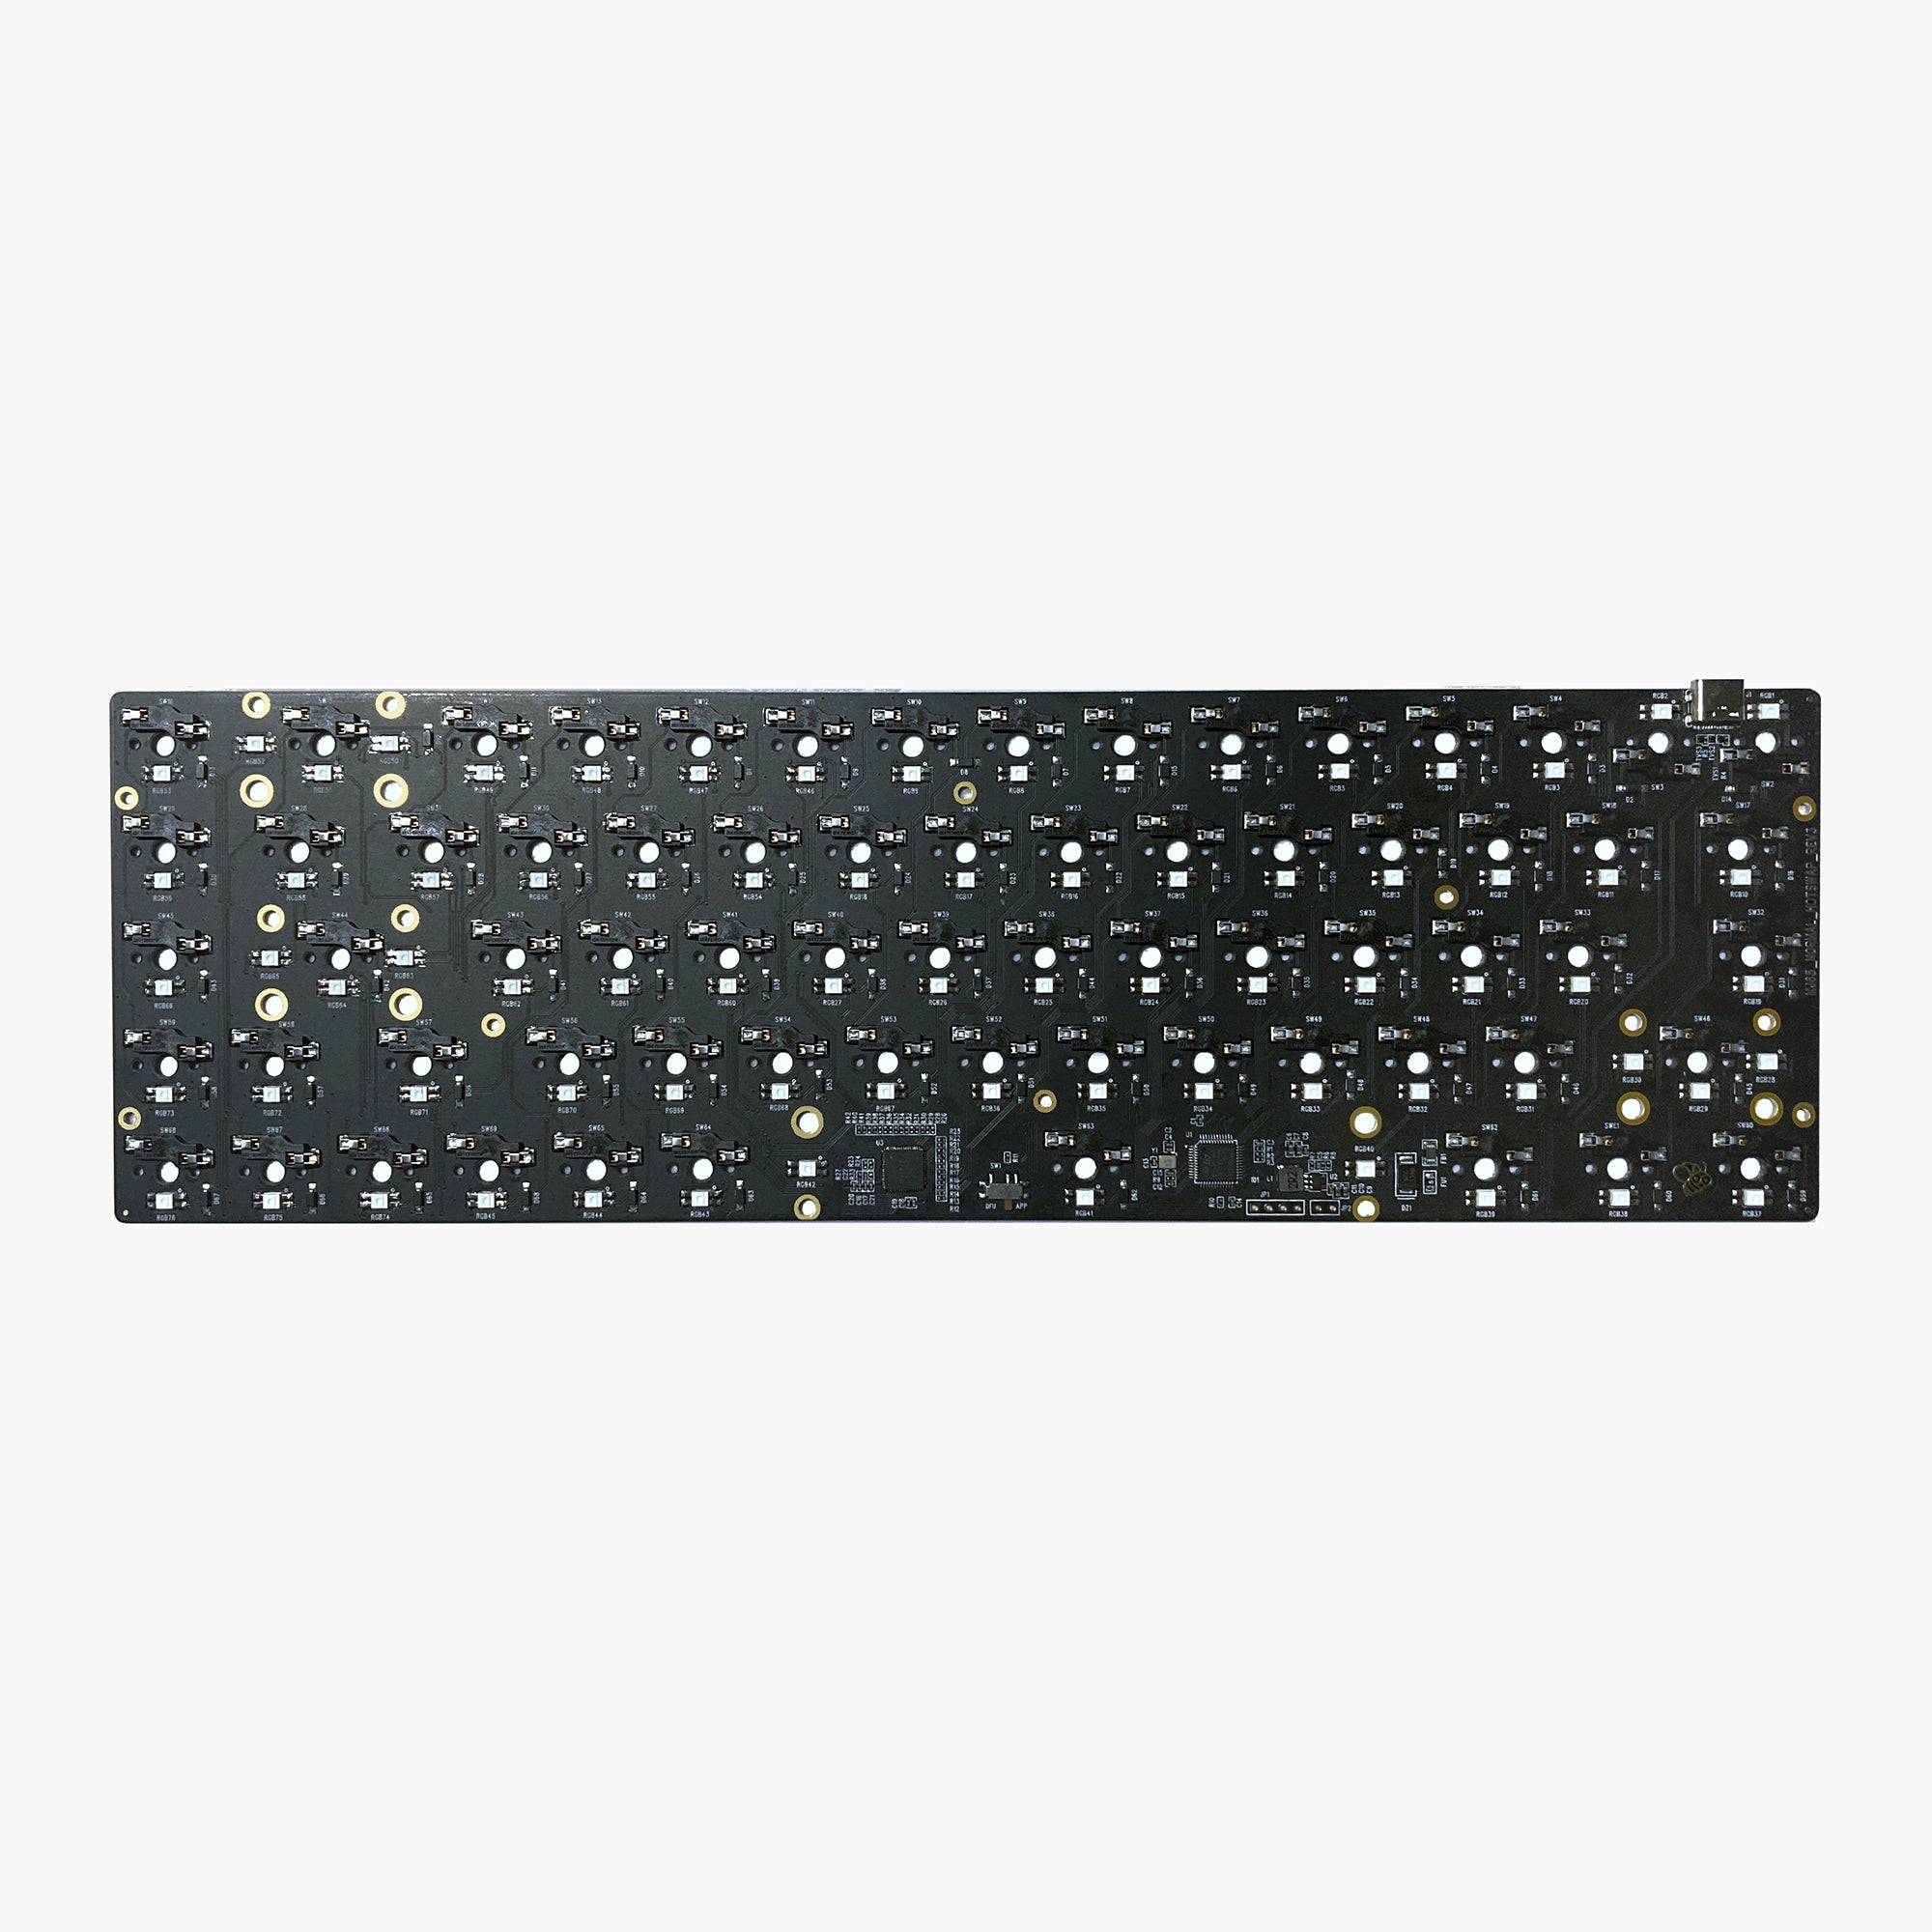 MelGeek MJ65 65% Keyboard PCBA Hotswap-fähig